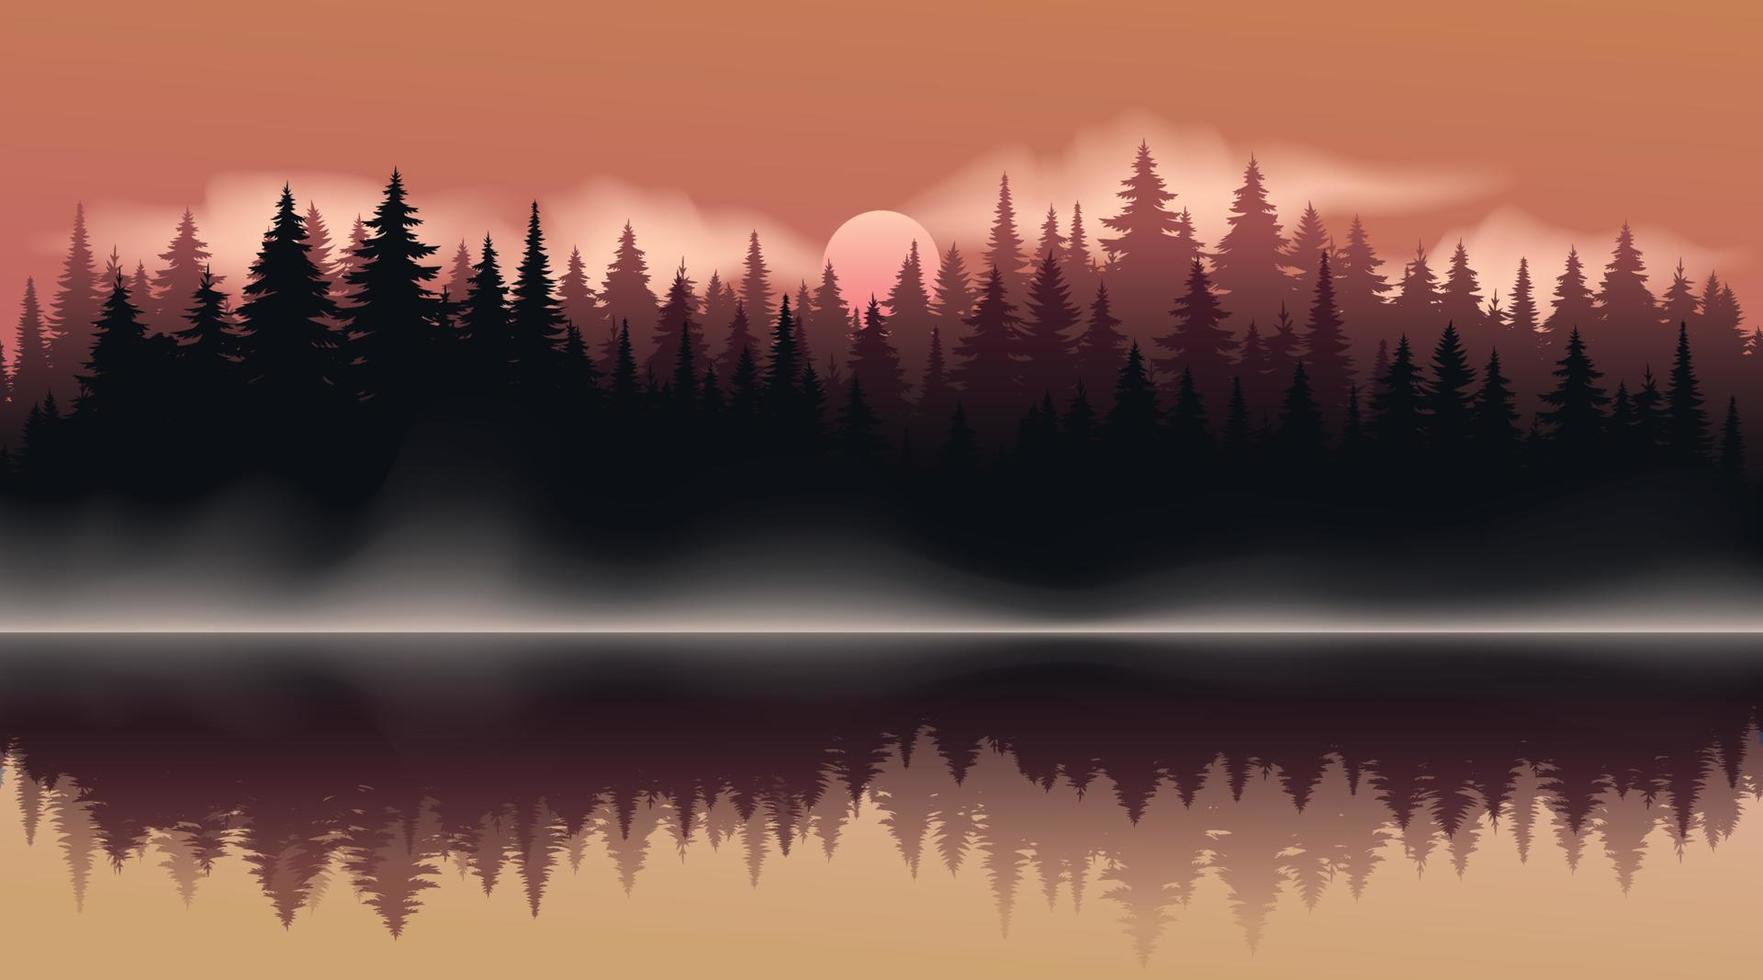 texture de fond de forêt sombre vecteur, silhouette de forêt de conifères, vecteur. arbres de saison au bord du lac, reflet dans l'eau épicéa, sapin. paysage d'automne horizontal. soirée d'été avec coucher de soleil. vecteur